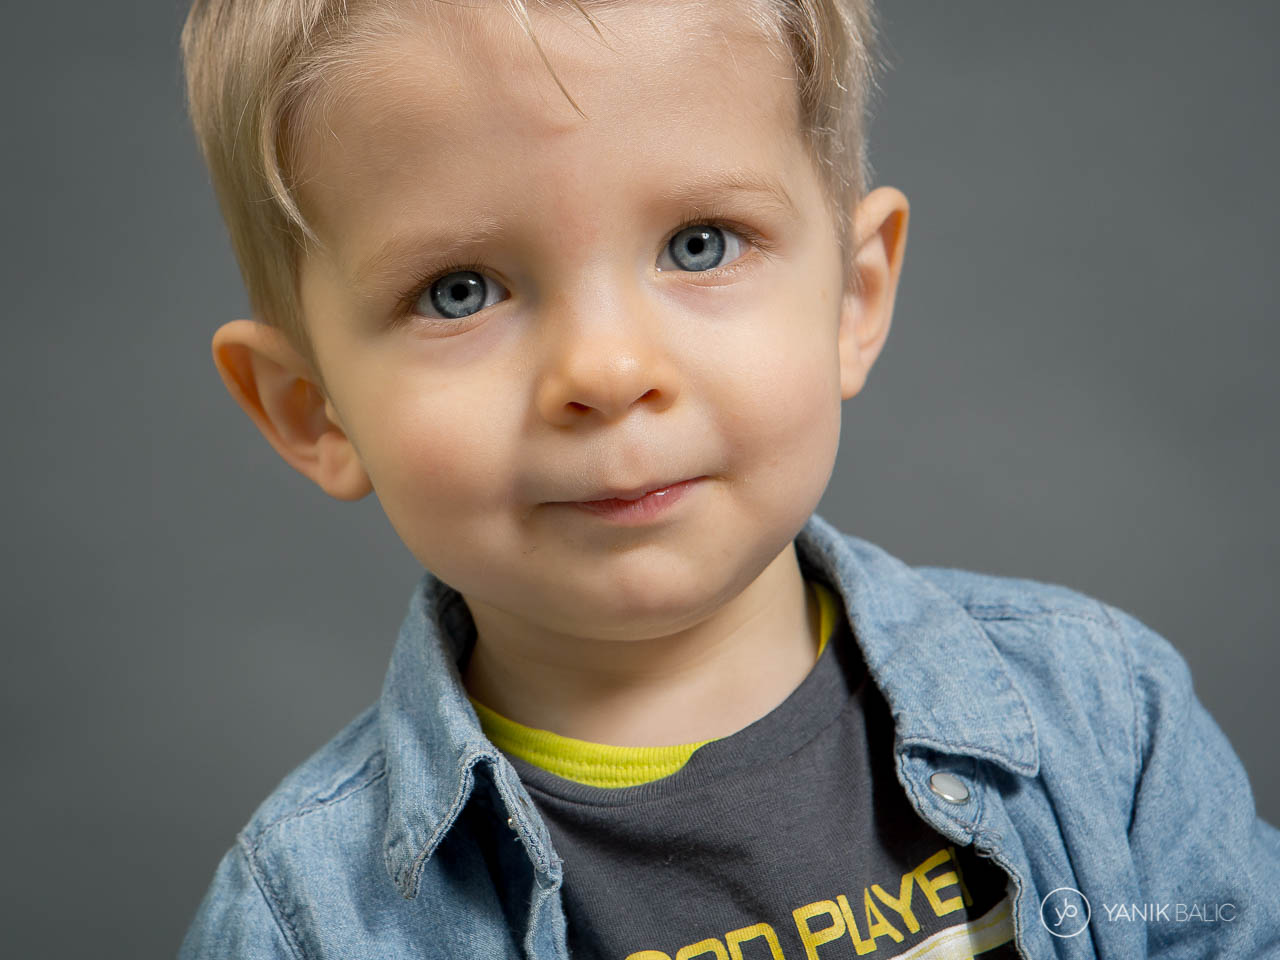 Séance photo d'un petit garçon - Yanik Balic - photographe professionnel